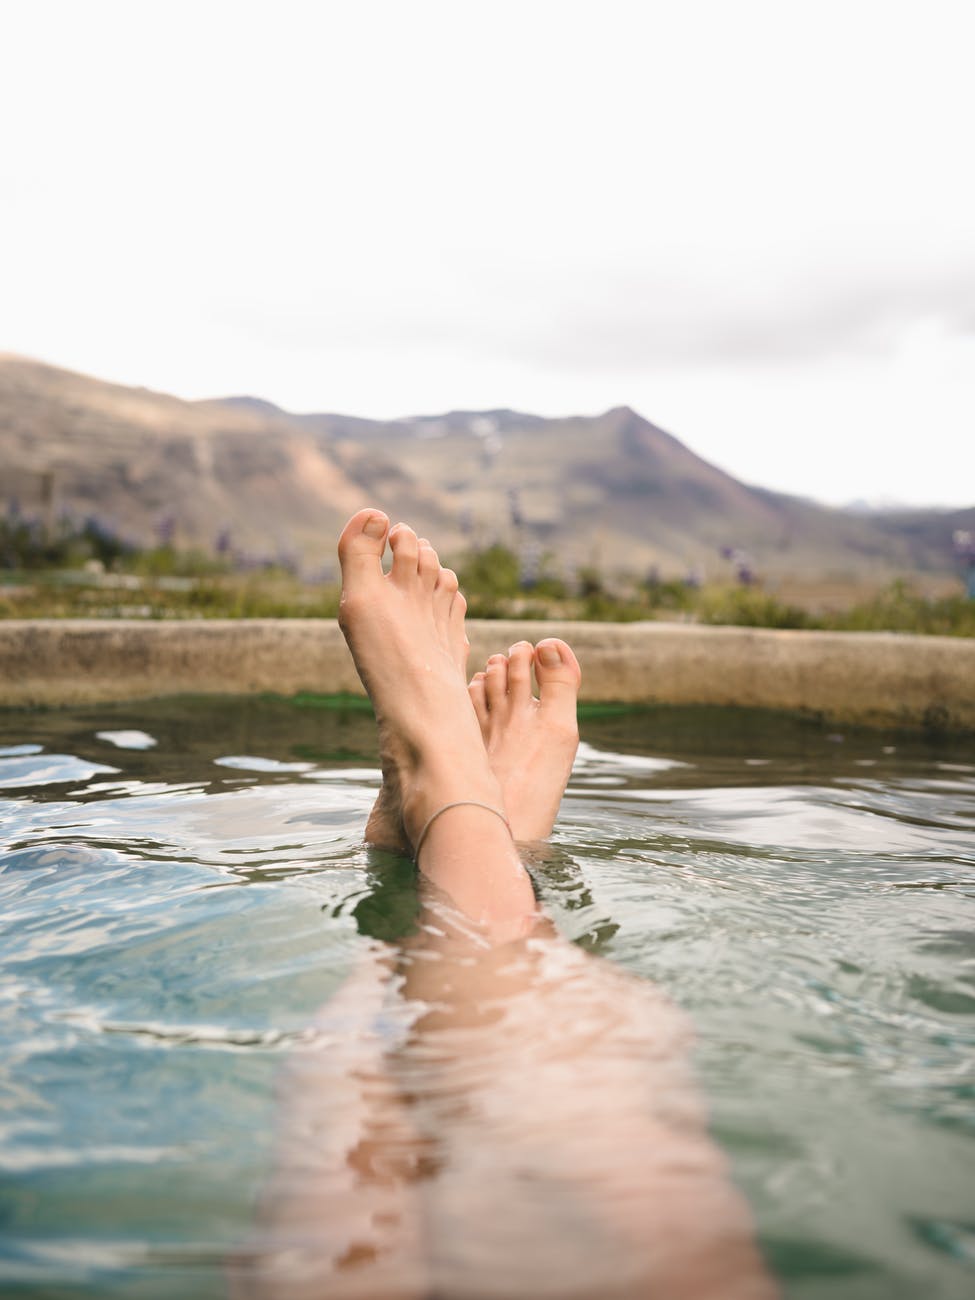 ngâm chân với nước nóng là thói quen giúp thư giãn và tốt cho sức khỏe